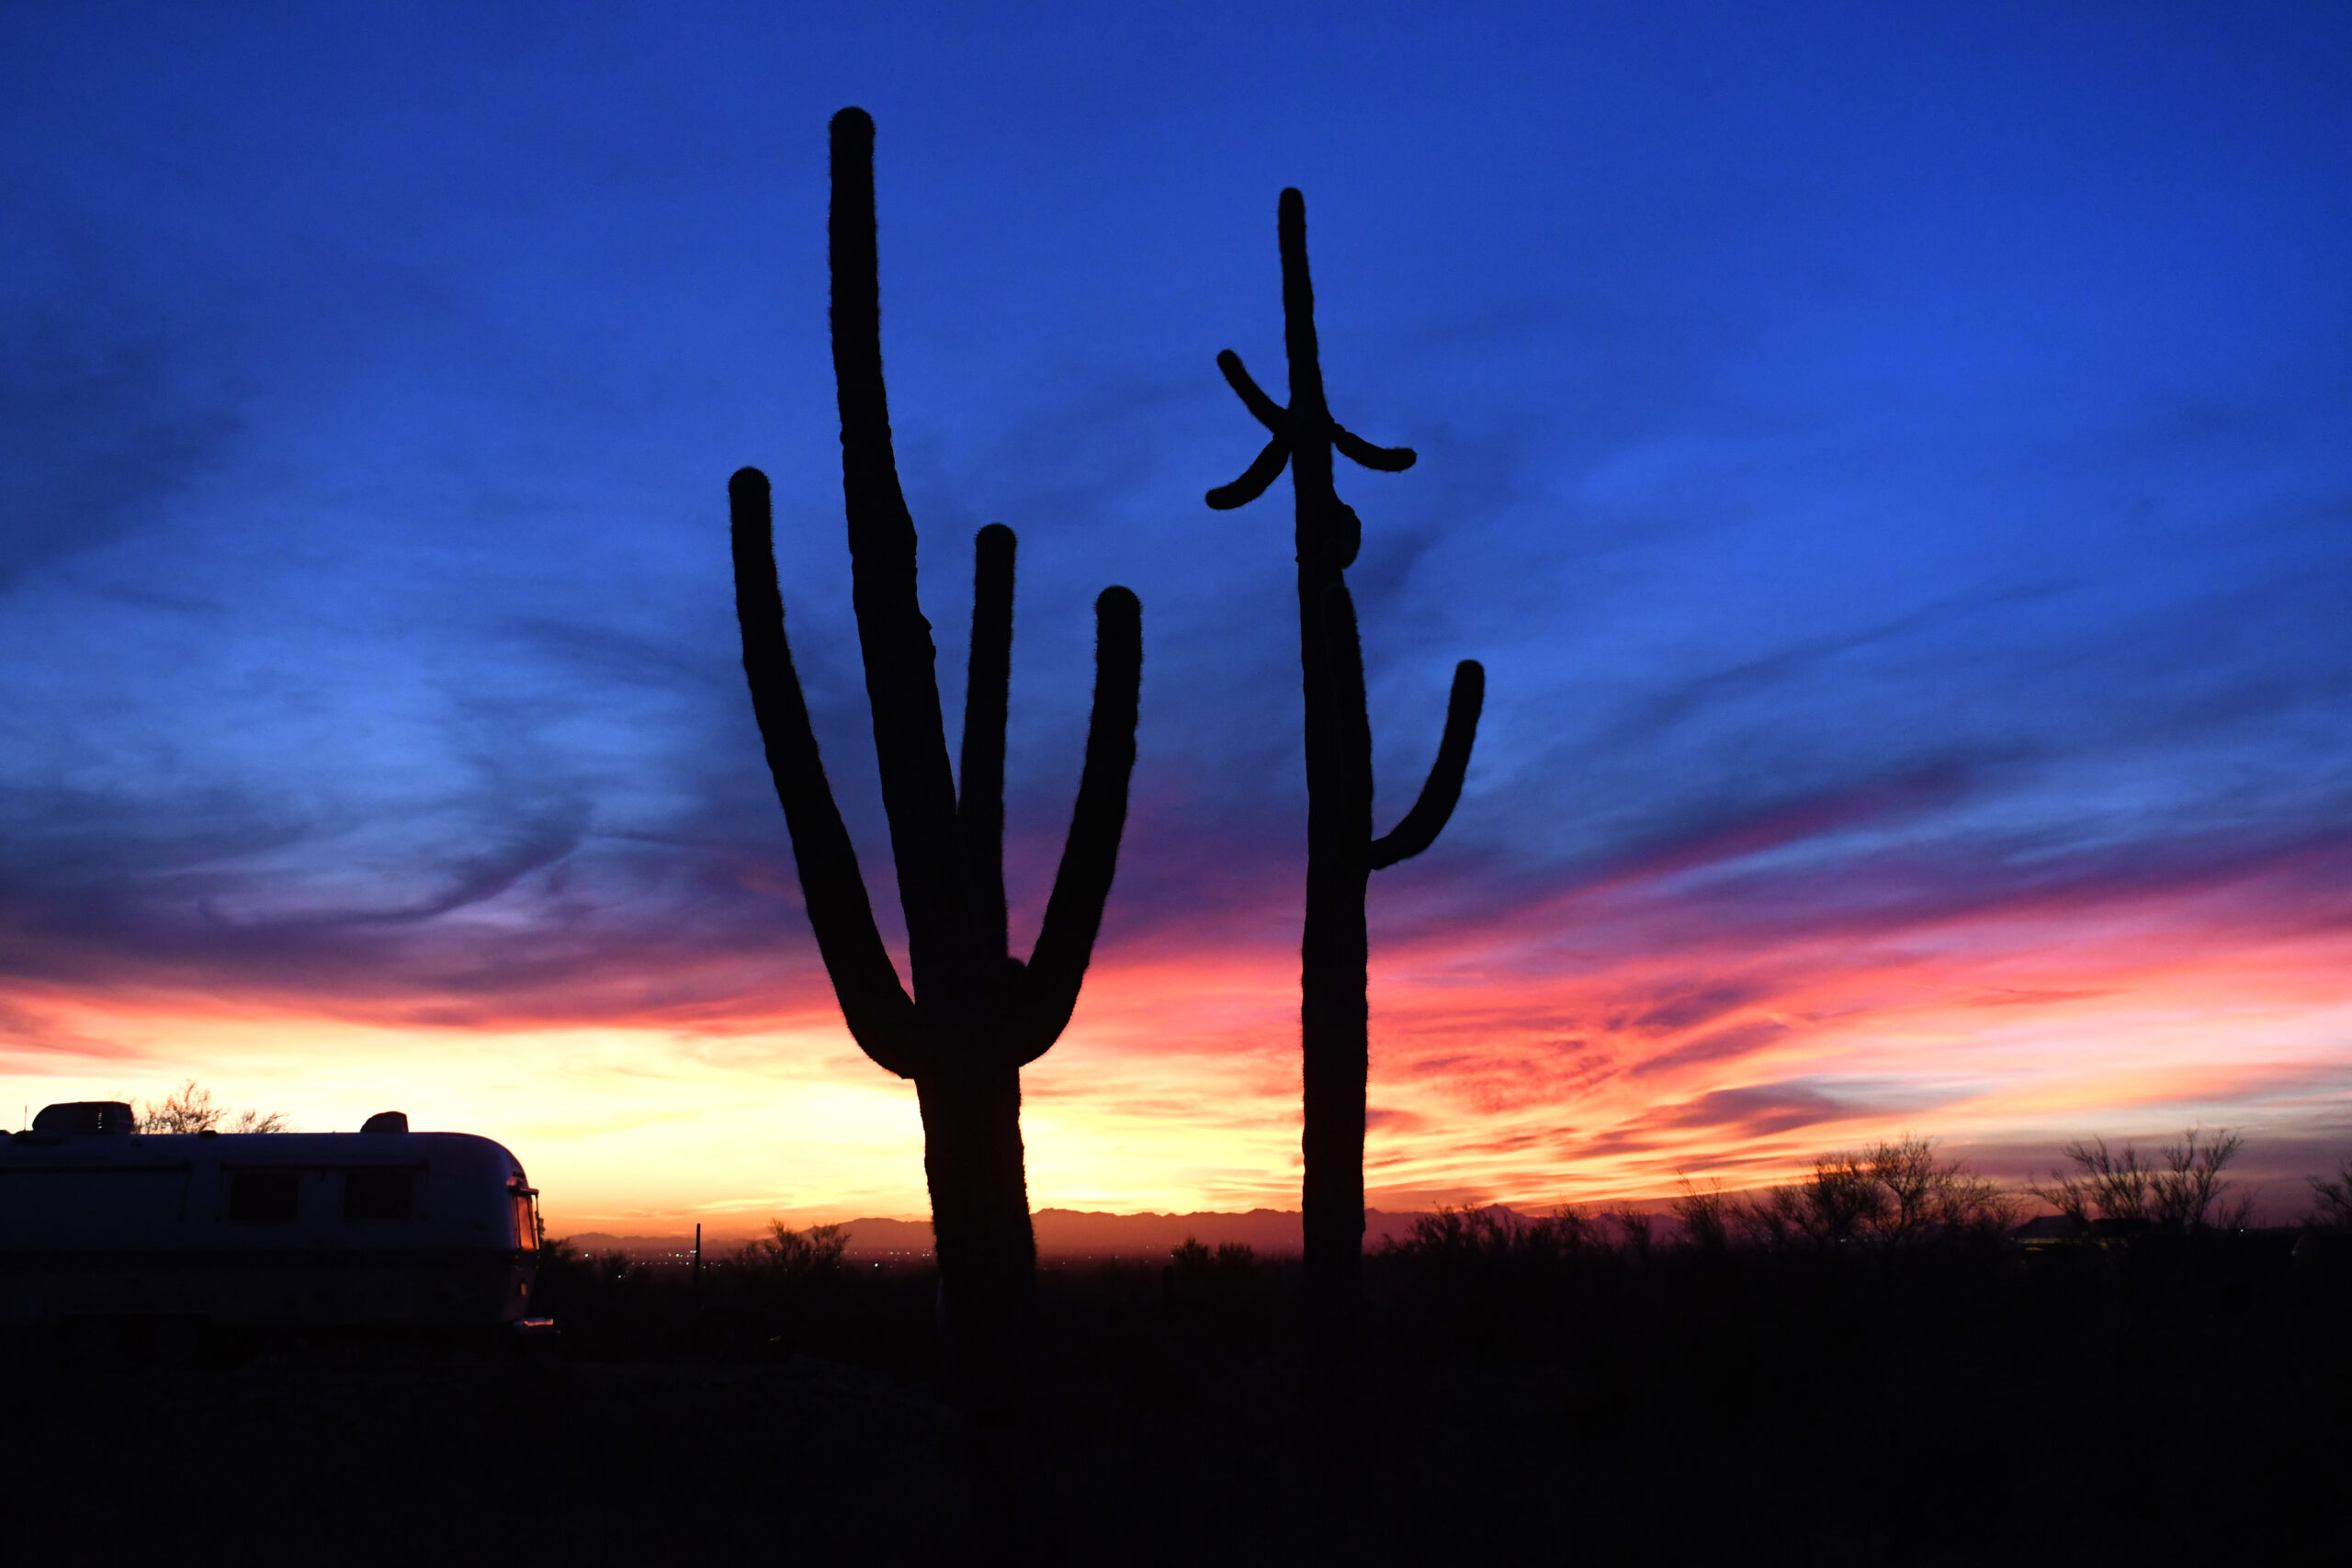 Arizona desert sunset and cactus